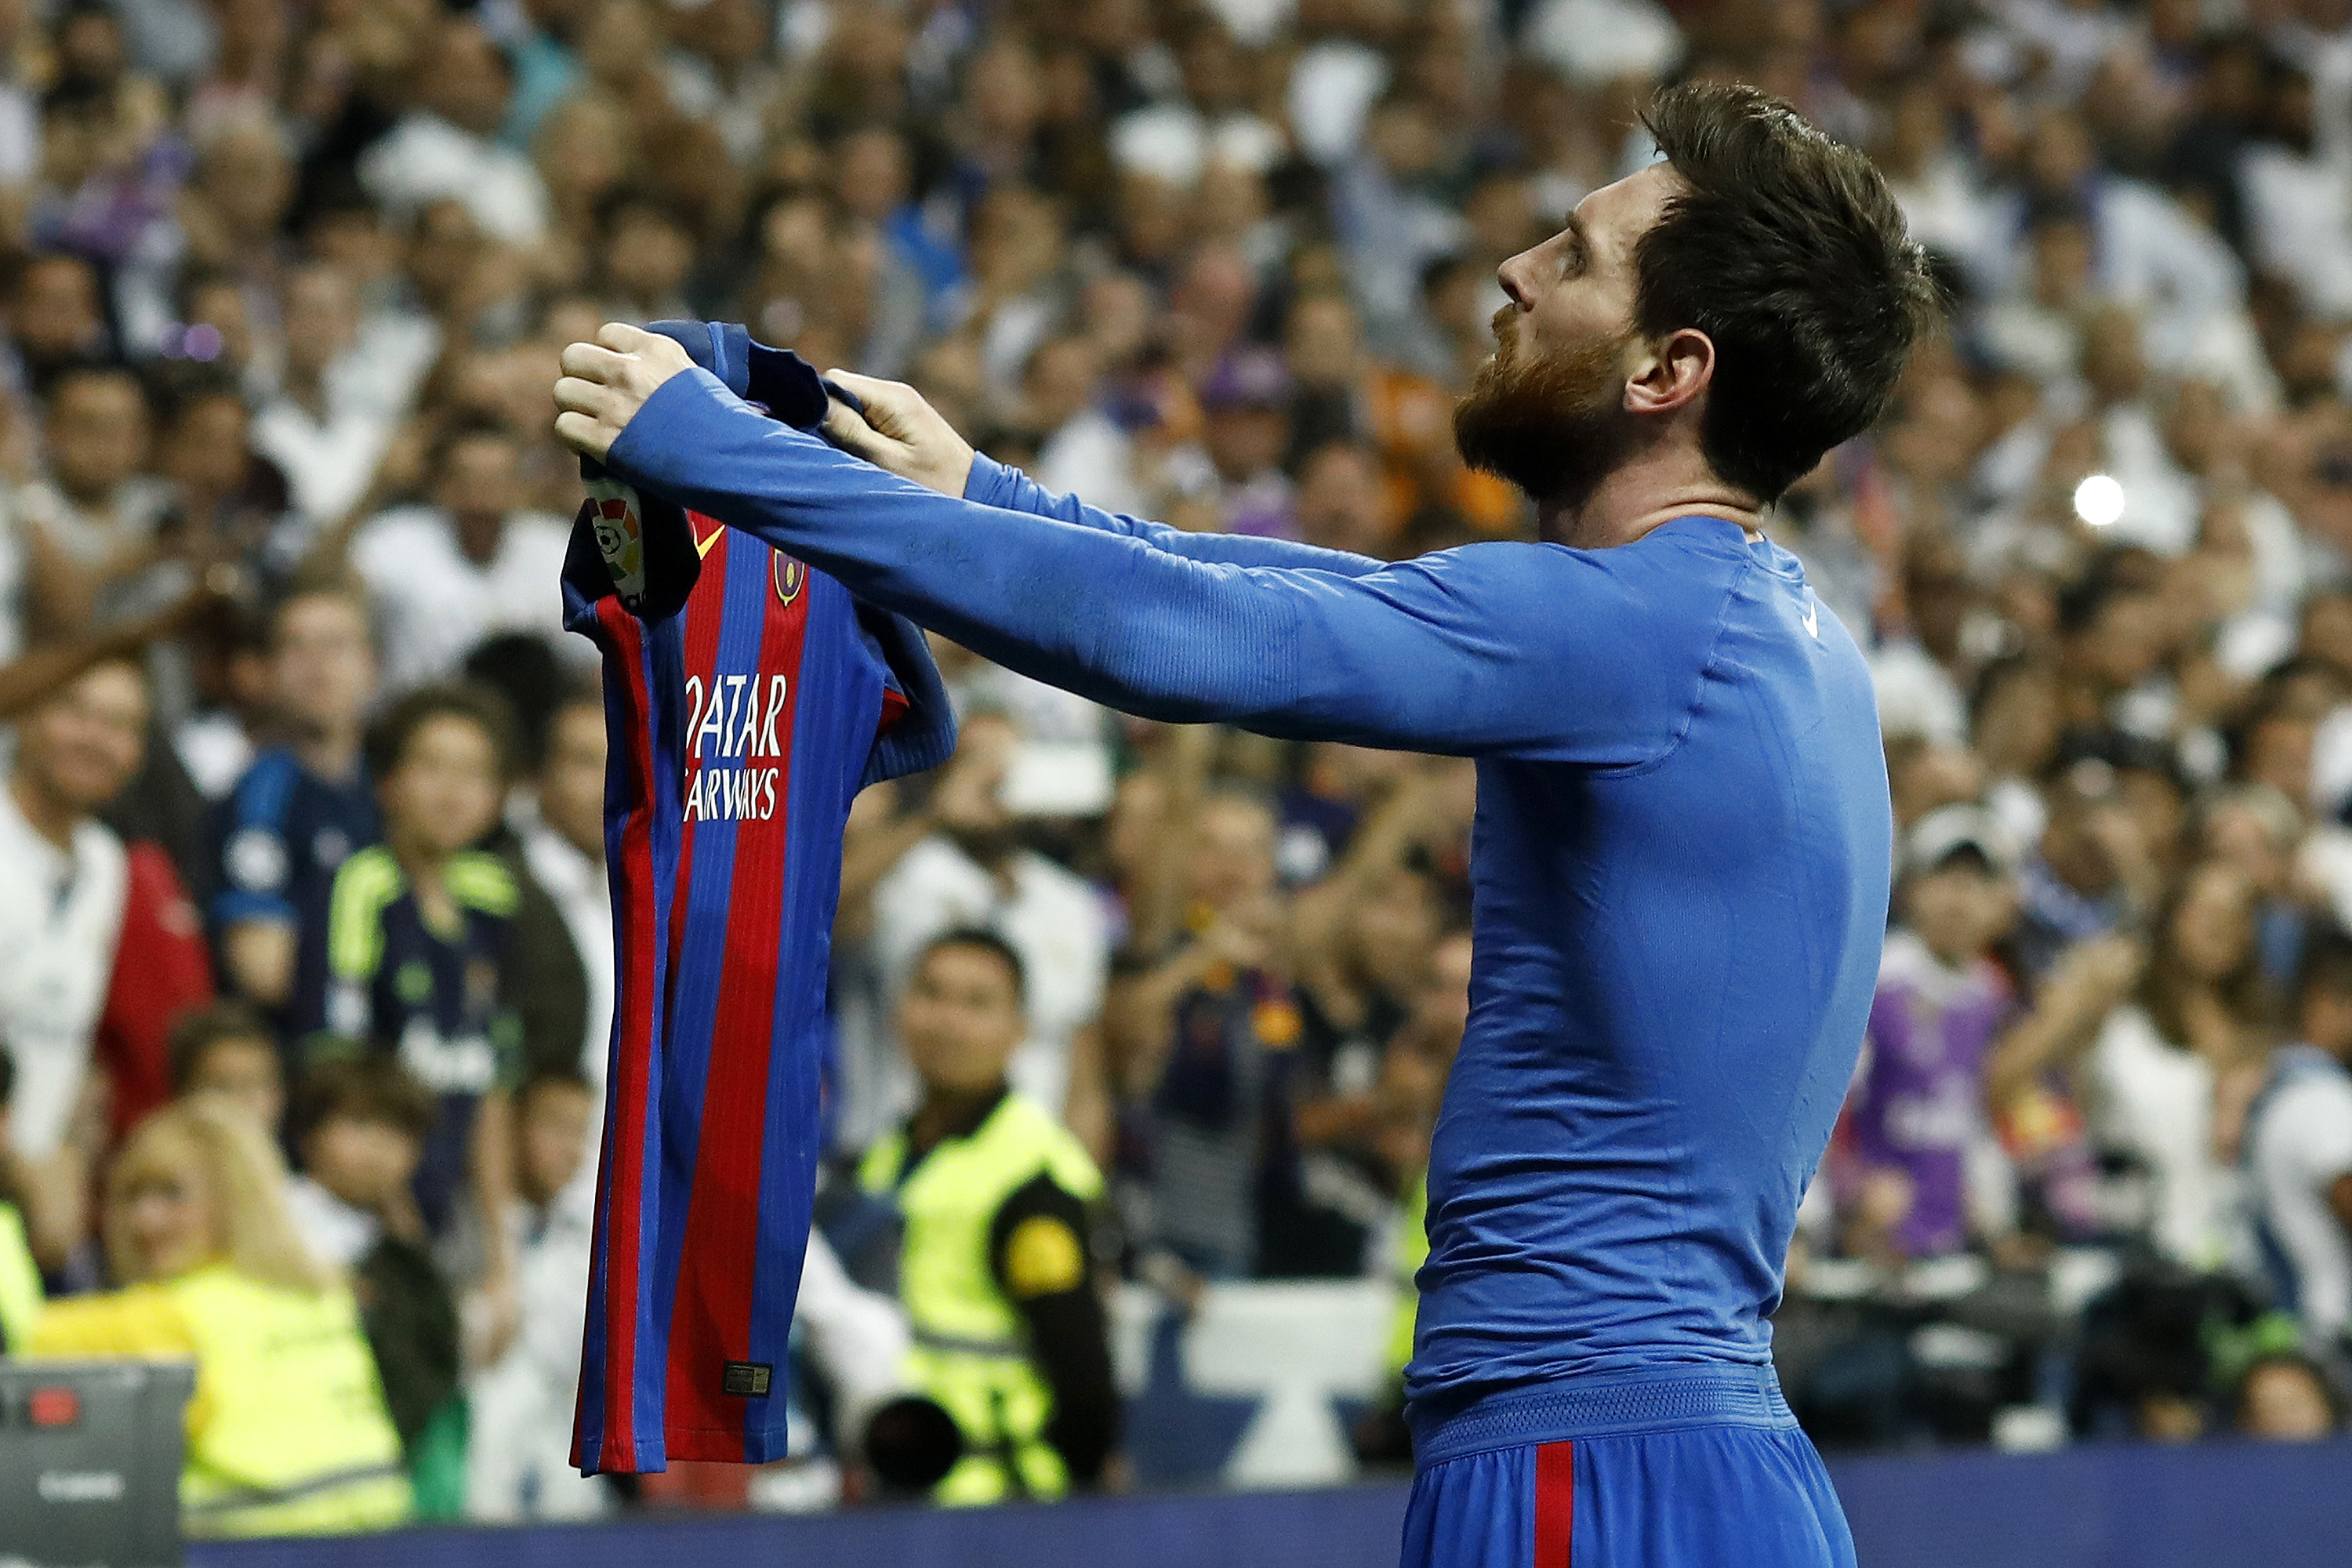 Maior artilheiro de Barcelona x Real Madrid, Messi vai para o jogo